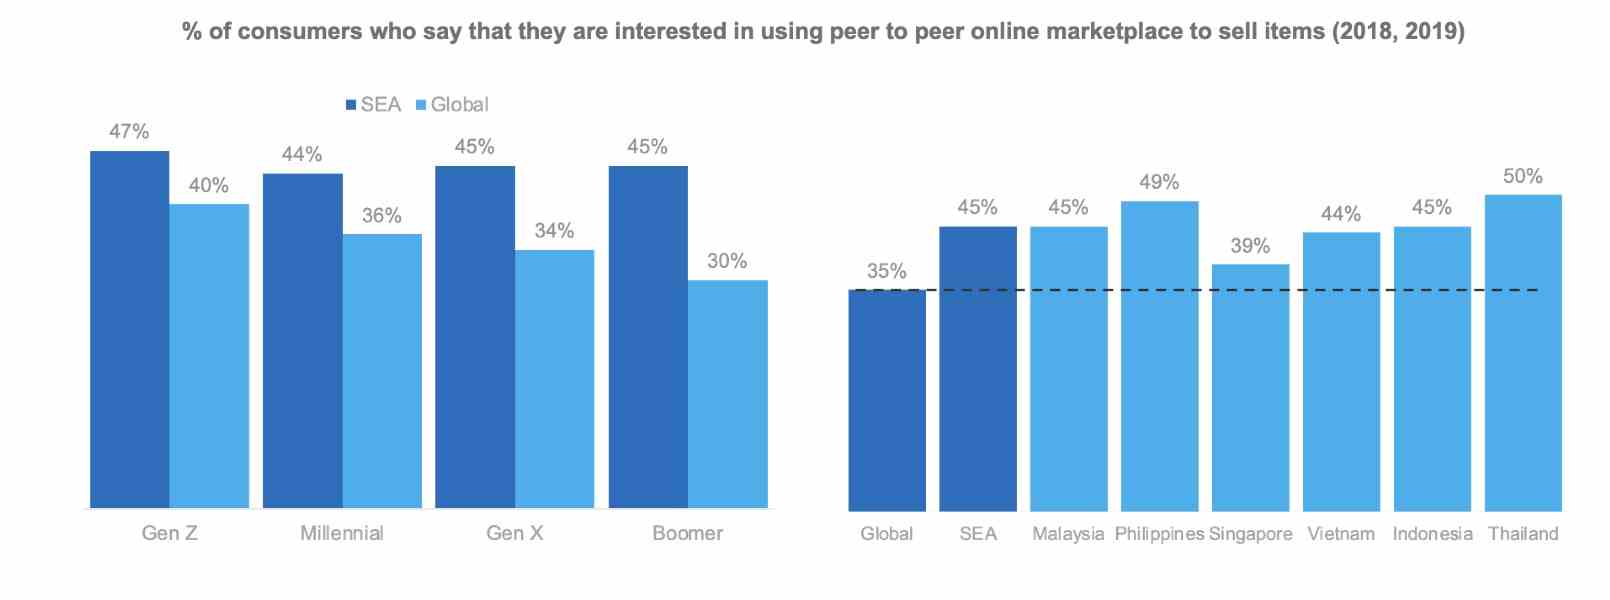 Menschen in Südostasien zeigen eine höhere Präferenz für P2P-Online-Marktplätze als andere Regionen